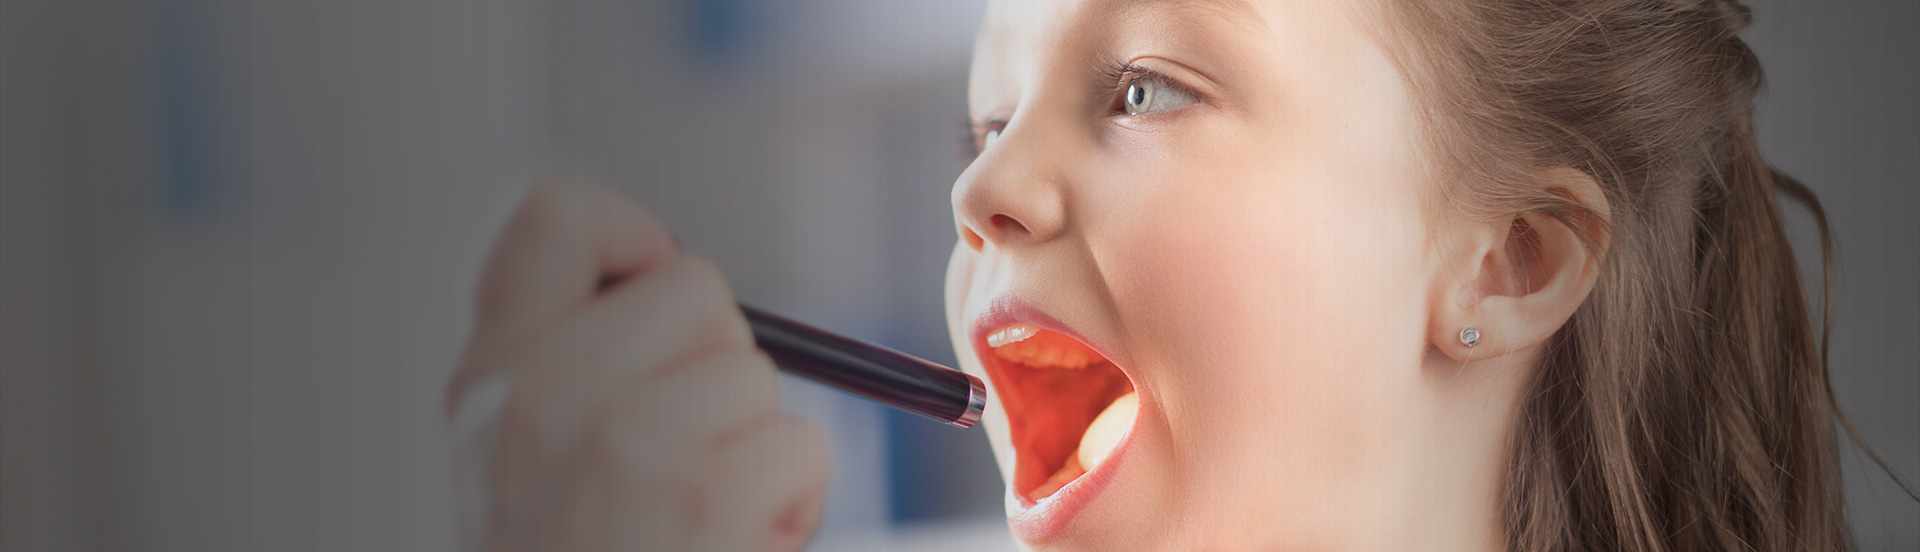 Slajd 1 - badanie jamy ustnej